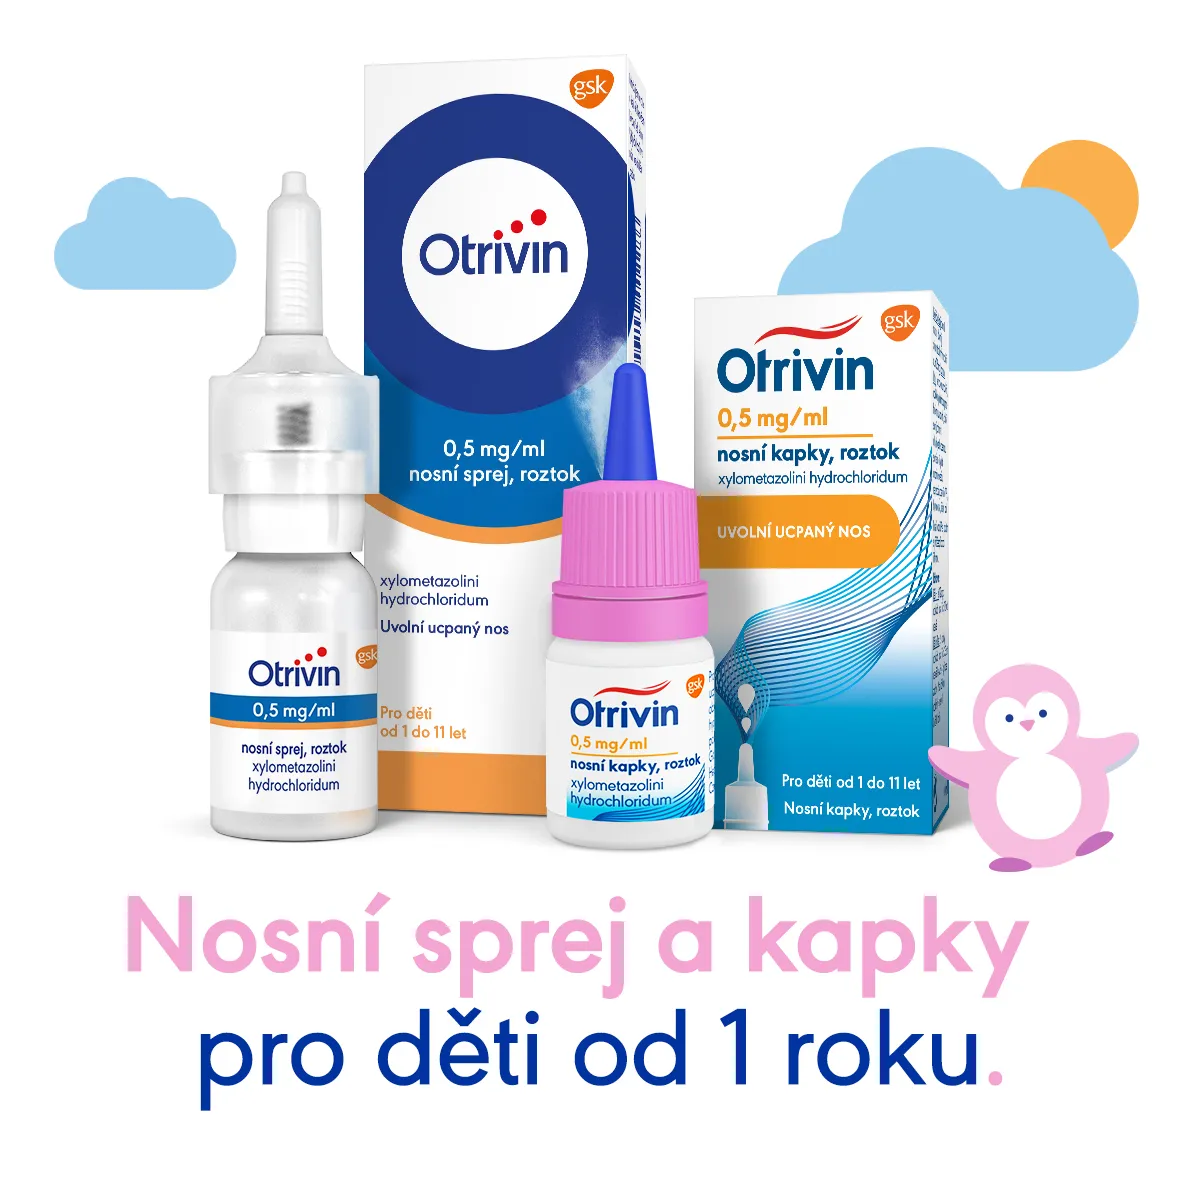 Otrivin 0,5 mg/ml nosní sprej 10 ml